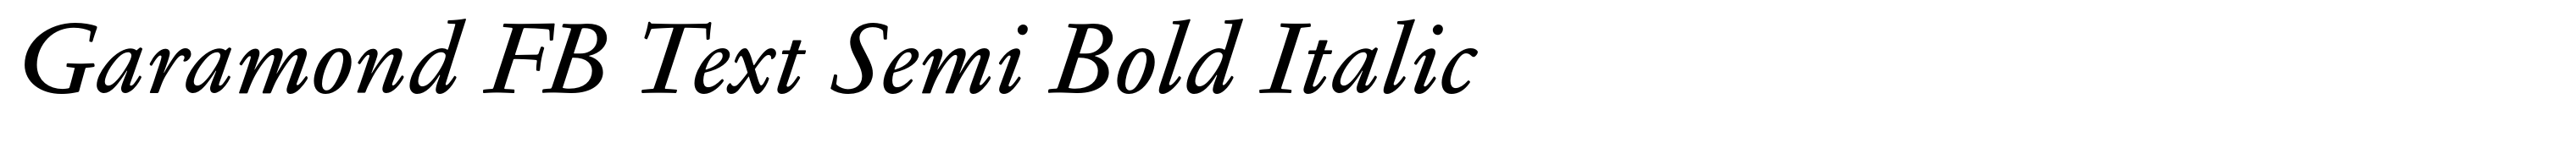 Garamond FB Text Semi Bold Italic